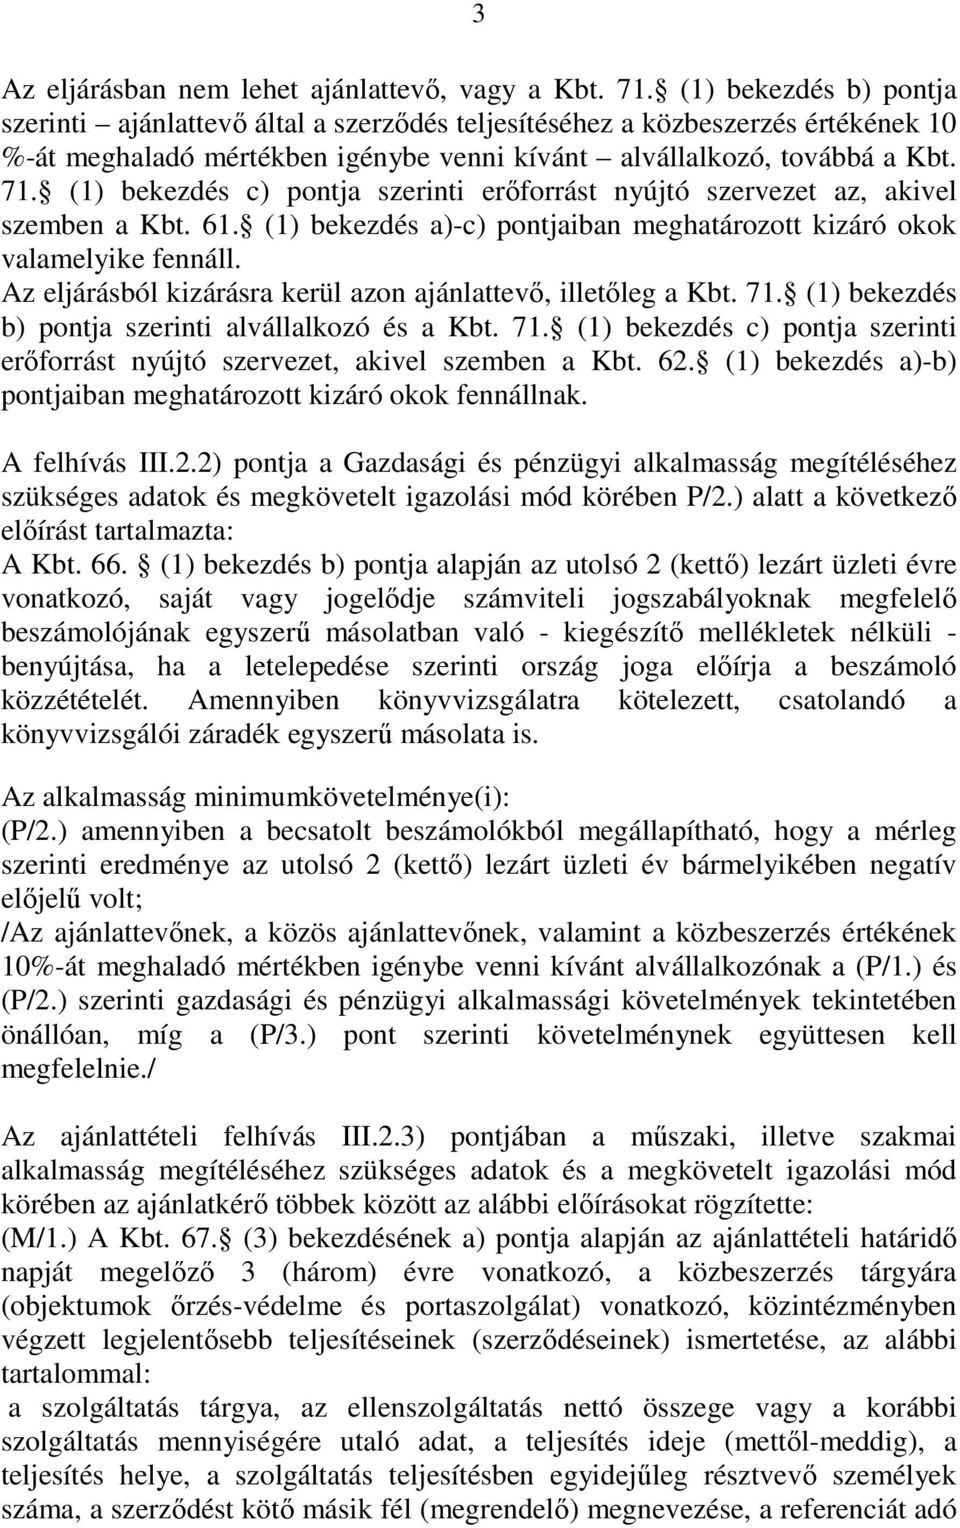 (1) bekezdés c) pontja szerinti erıforrást nyújtó szervezet az, akivel szemben a Kbt. 61. (1) bekezdés a)-c) pontjaiban meghatározott kizáró okok valamelyike fennáll.